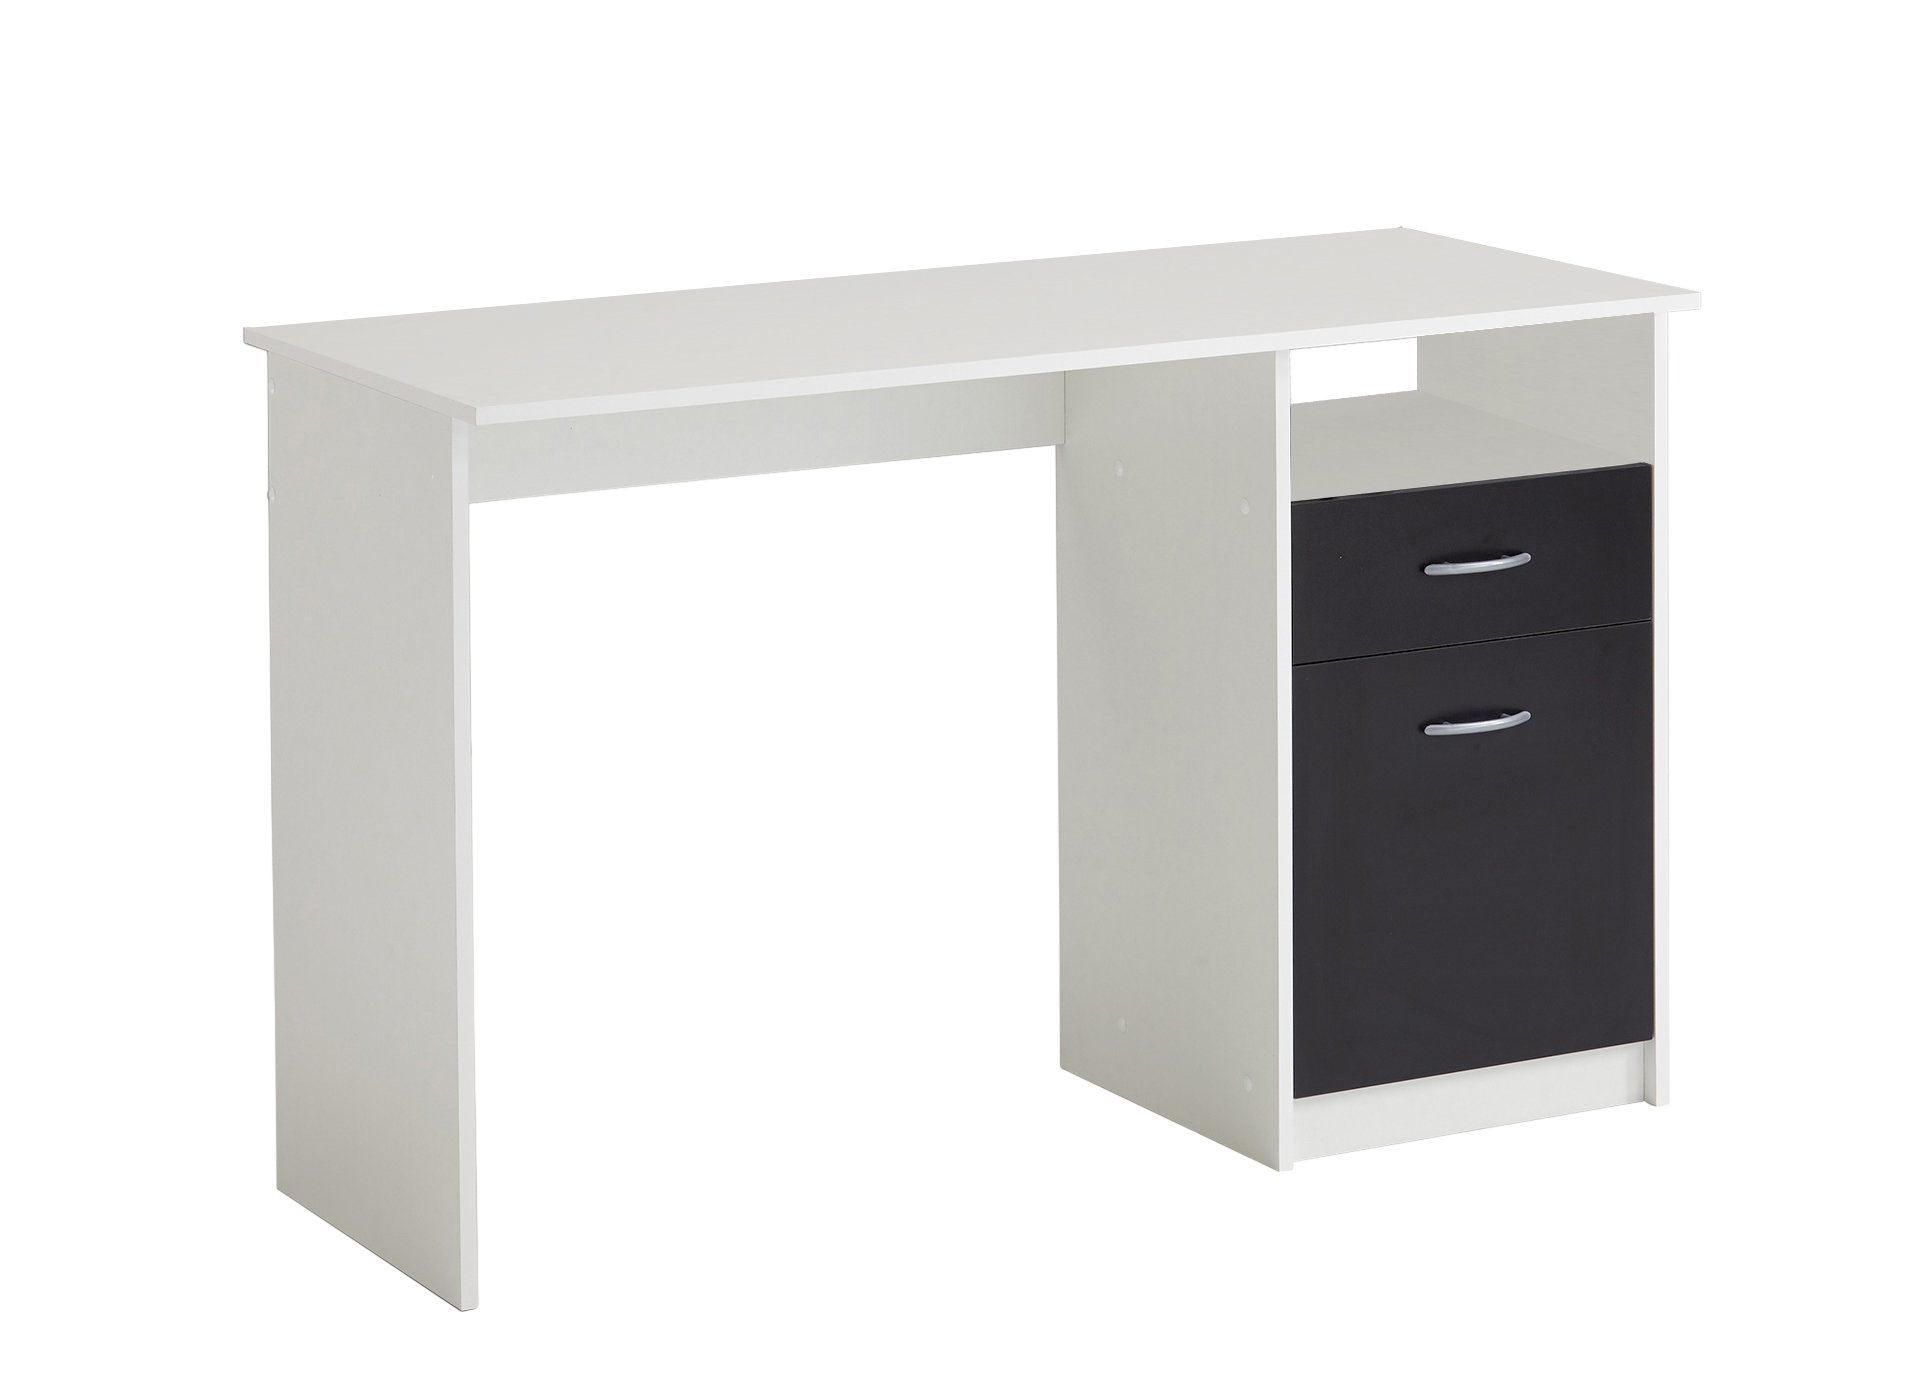 FMD Möbel, 3004-001 Jackson Schreibtisch, holz, weiß/schwarz, maße 123.0 x 50.0 x 76.5 cm (BHT)